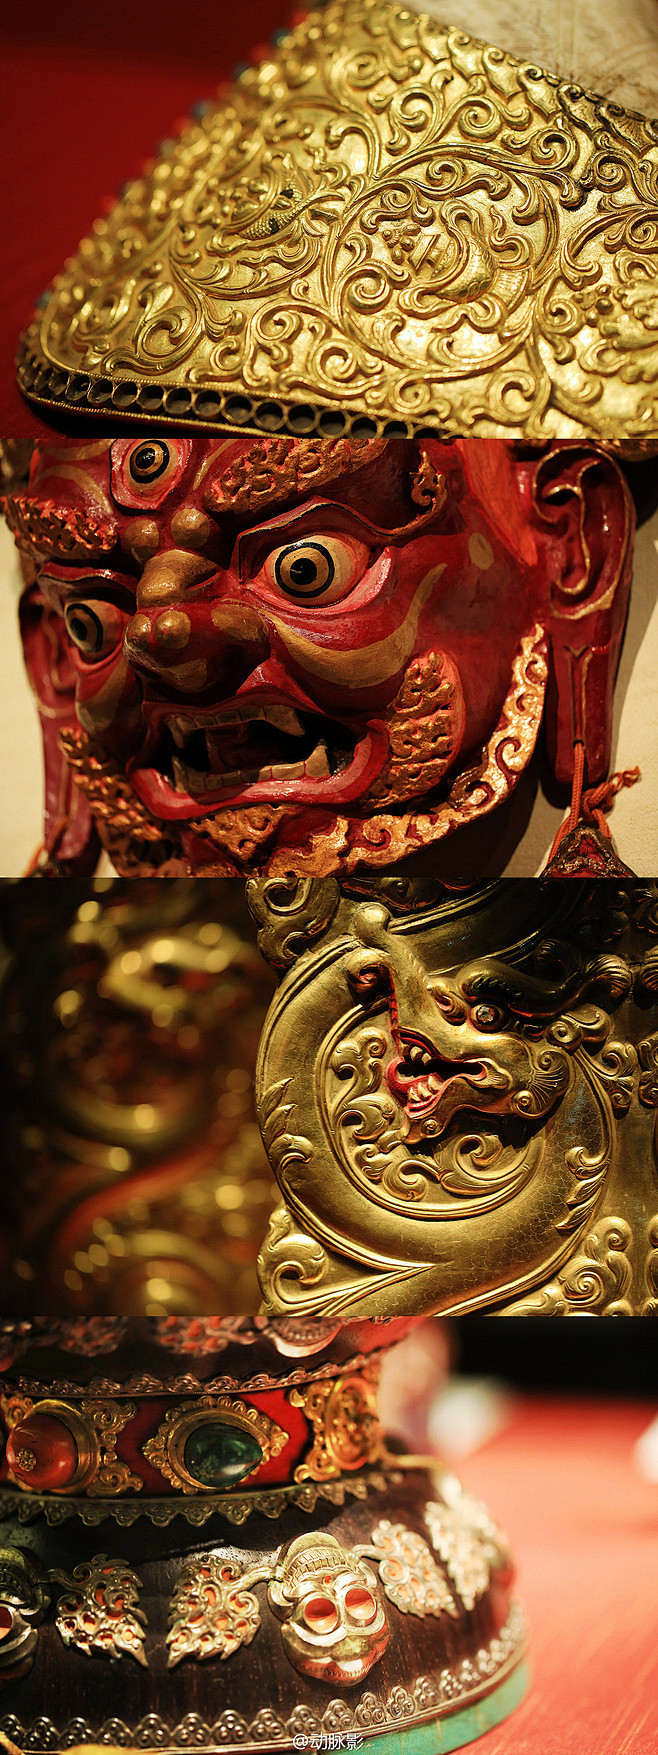 藏传佛教法器与面具